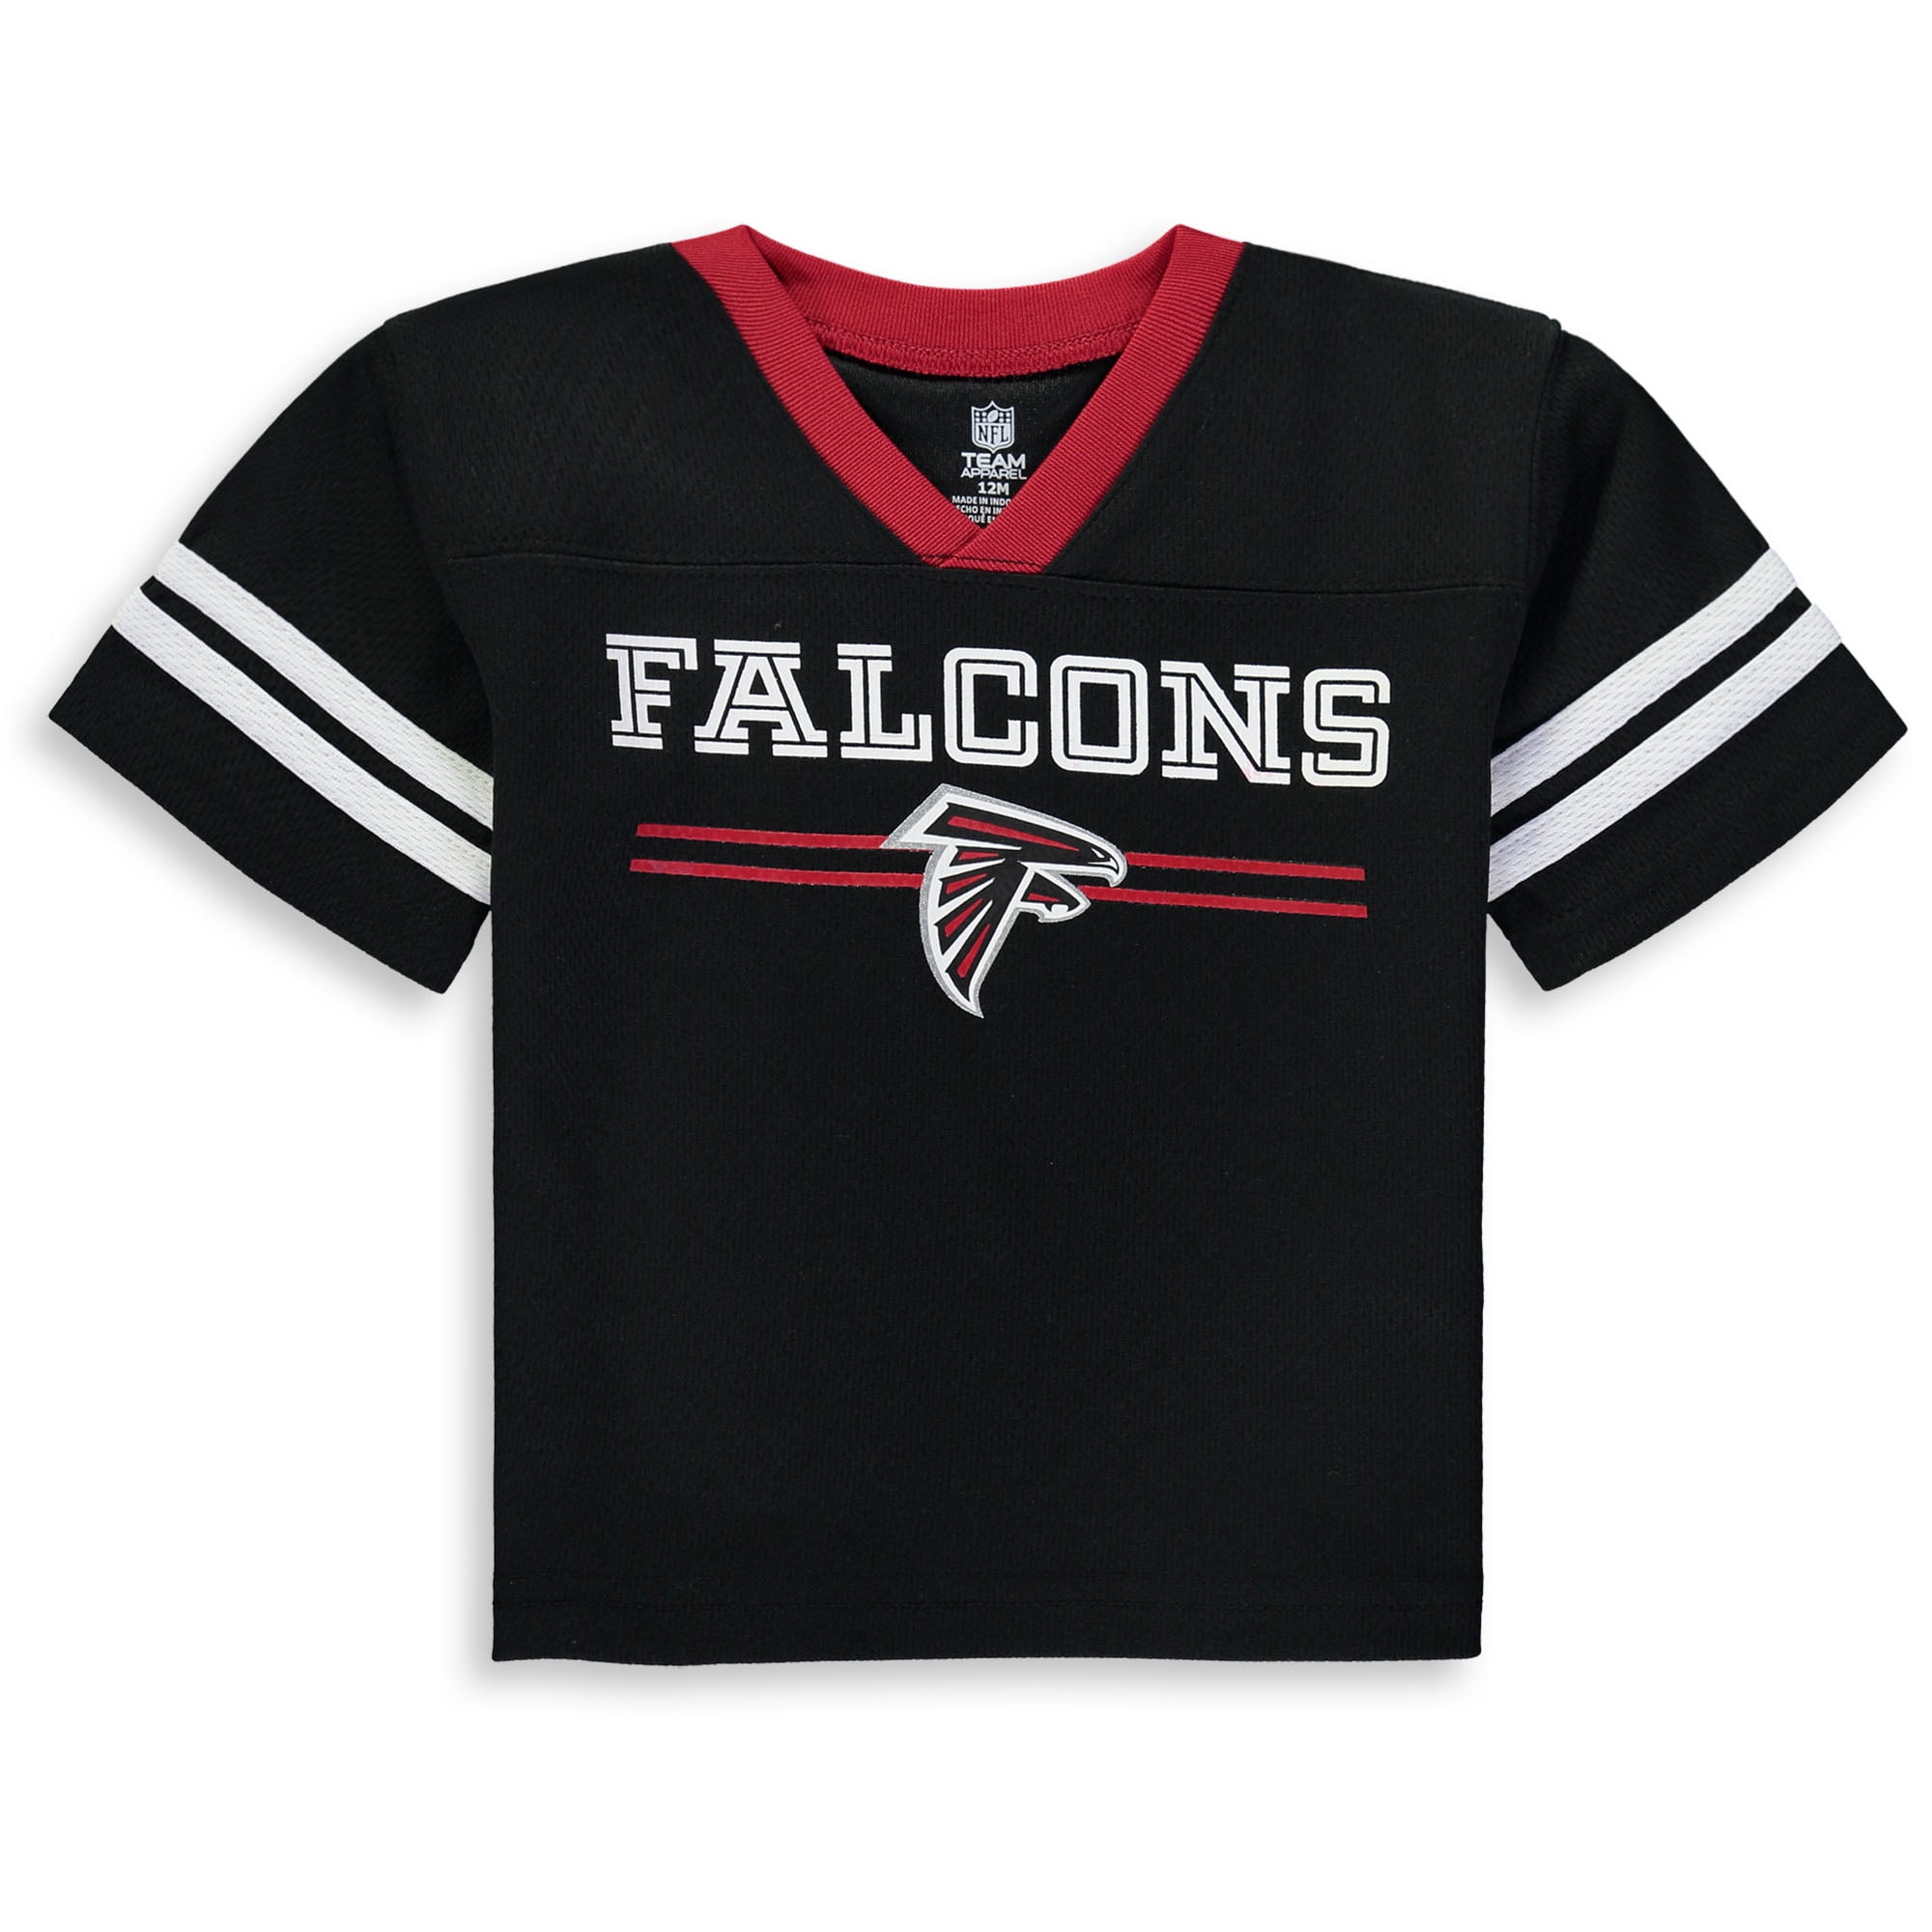 infant atlanta falcons jersey